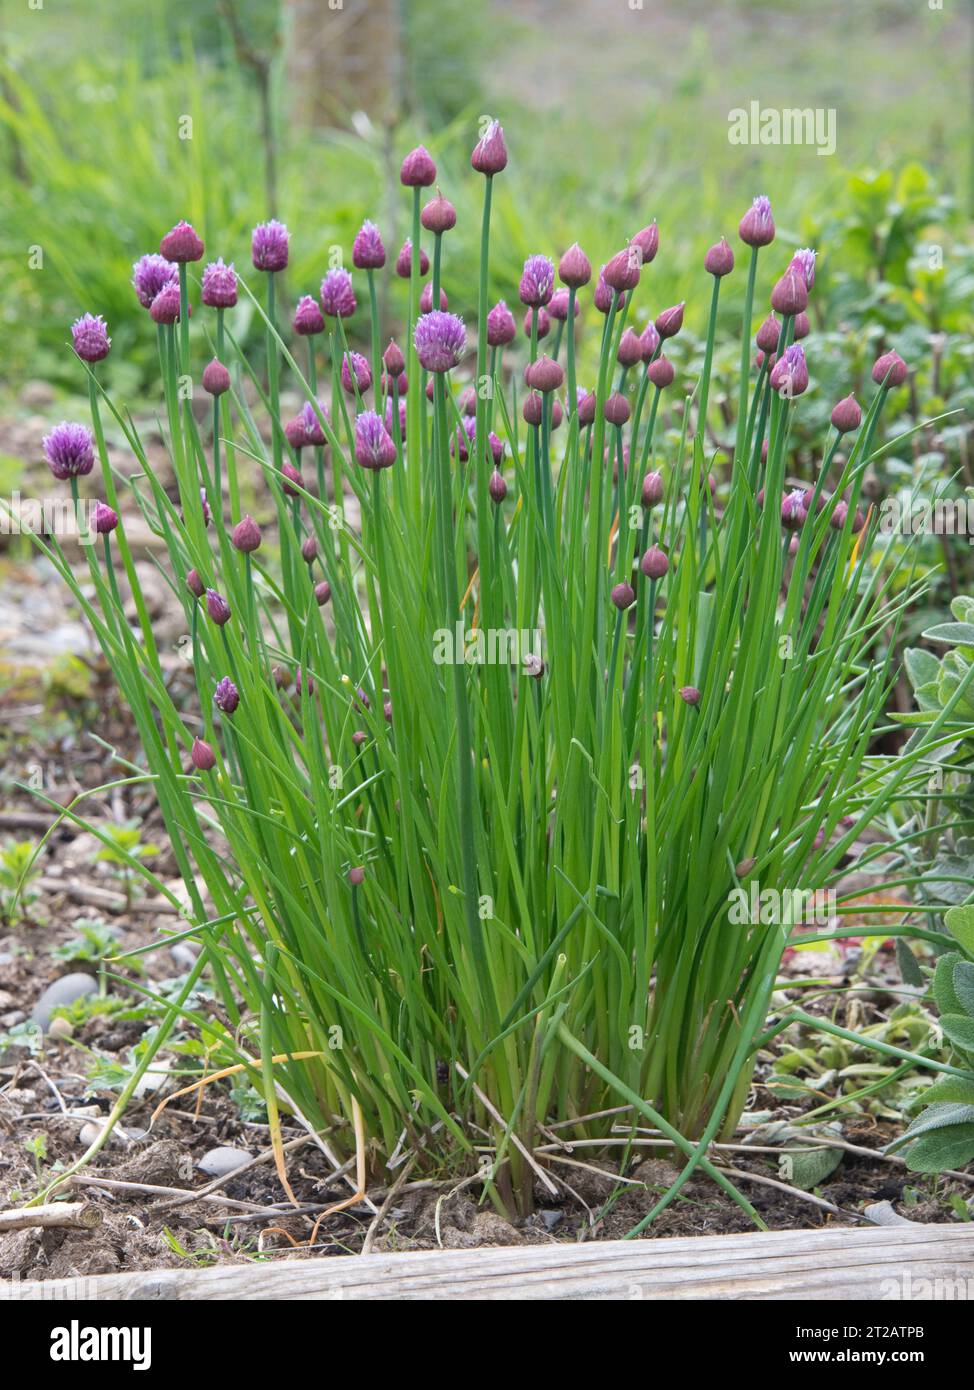 Ciboulette (Allium schoenoprasum) fleurs s'ouvrant, une herbe aux feuilles comestibles, scapes, utilisé en cuisine et salades, Berkshire, mai Banque D'Images